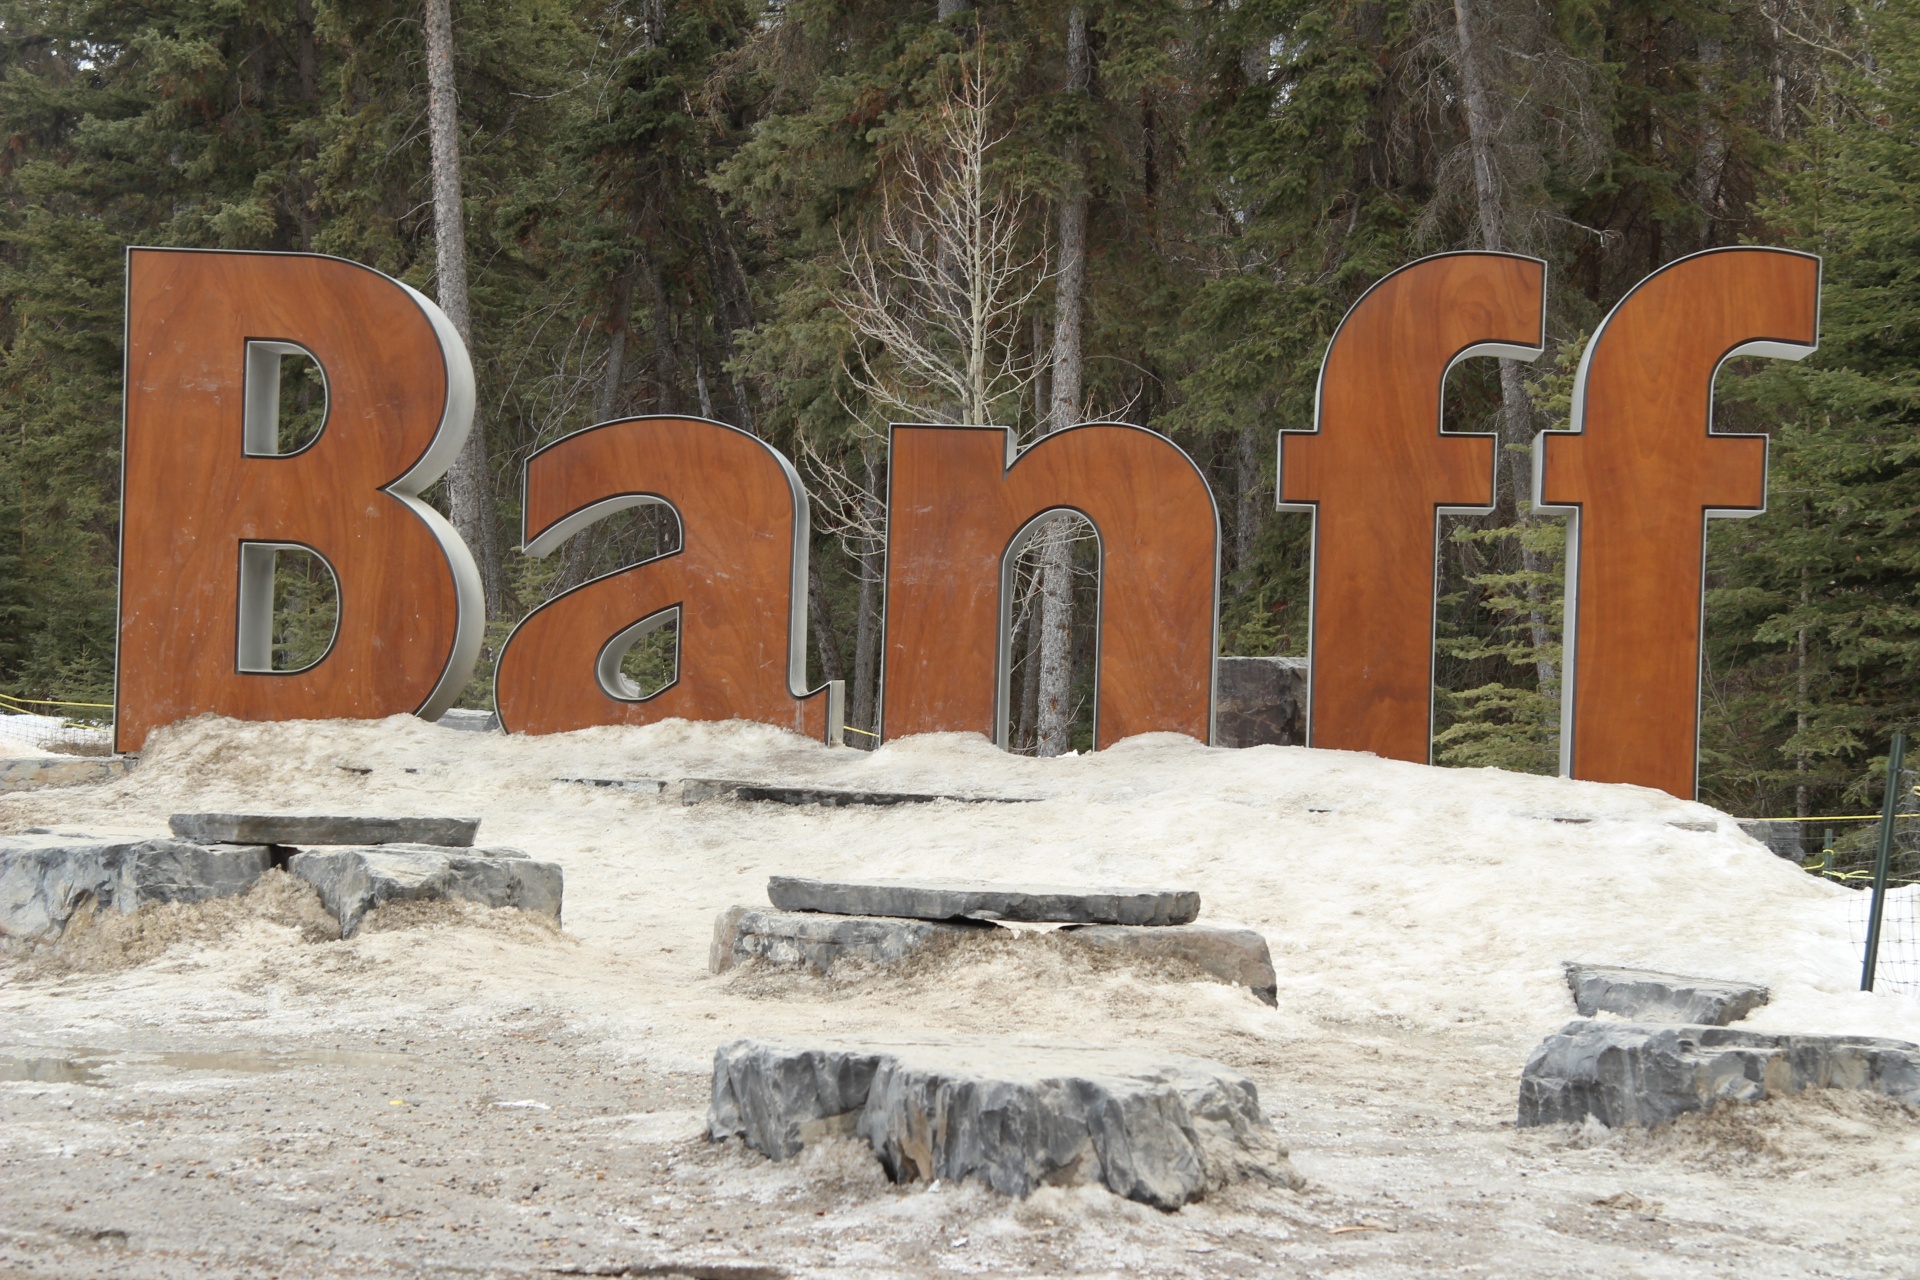 Banff Town-bord